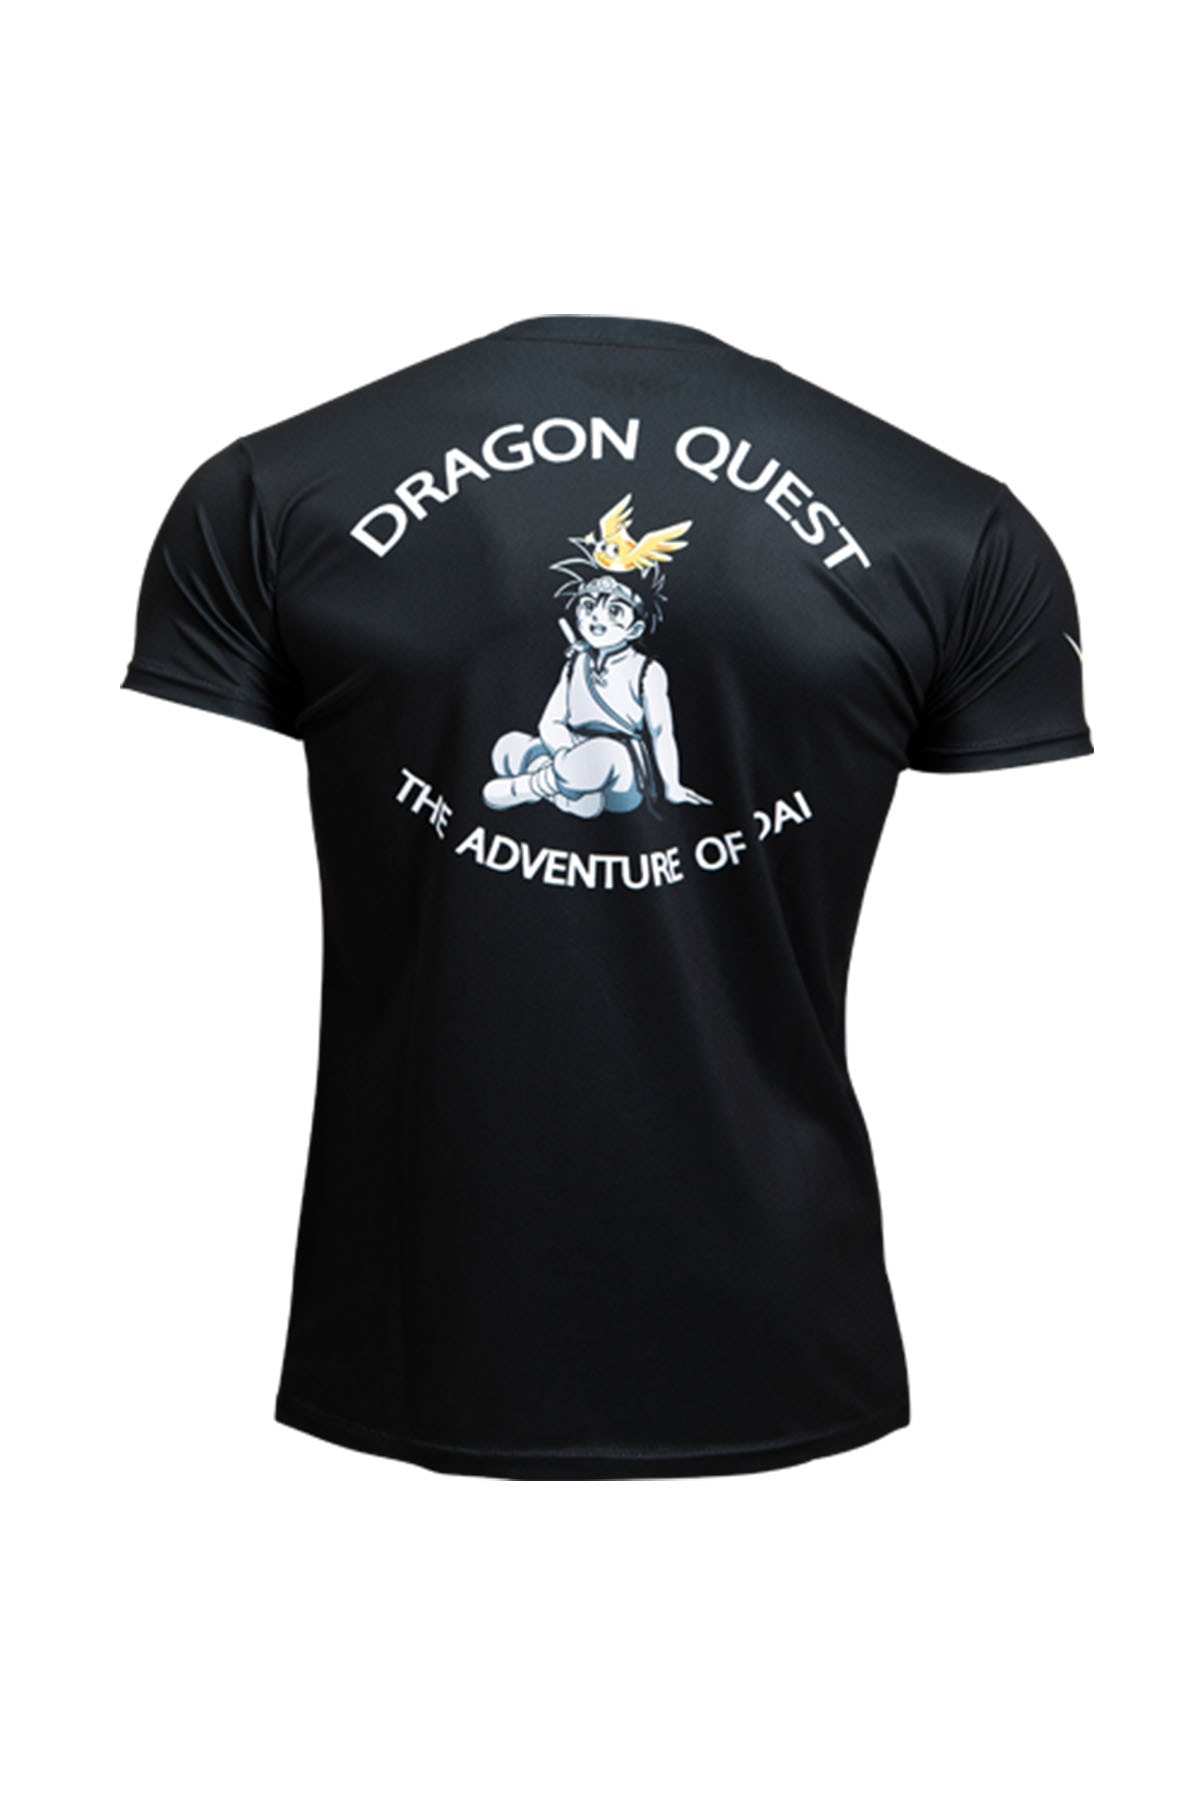 『ドラゴンクエスト ダイの大冒険』のキャラになりきれるスポーツウェアが登場 dragon quest the adventure of dai bodymaker collaboration sportswear release info